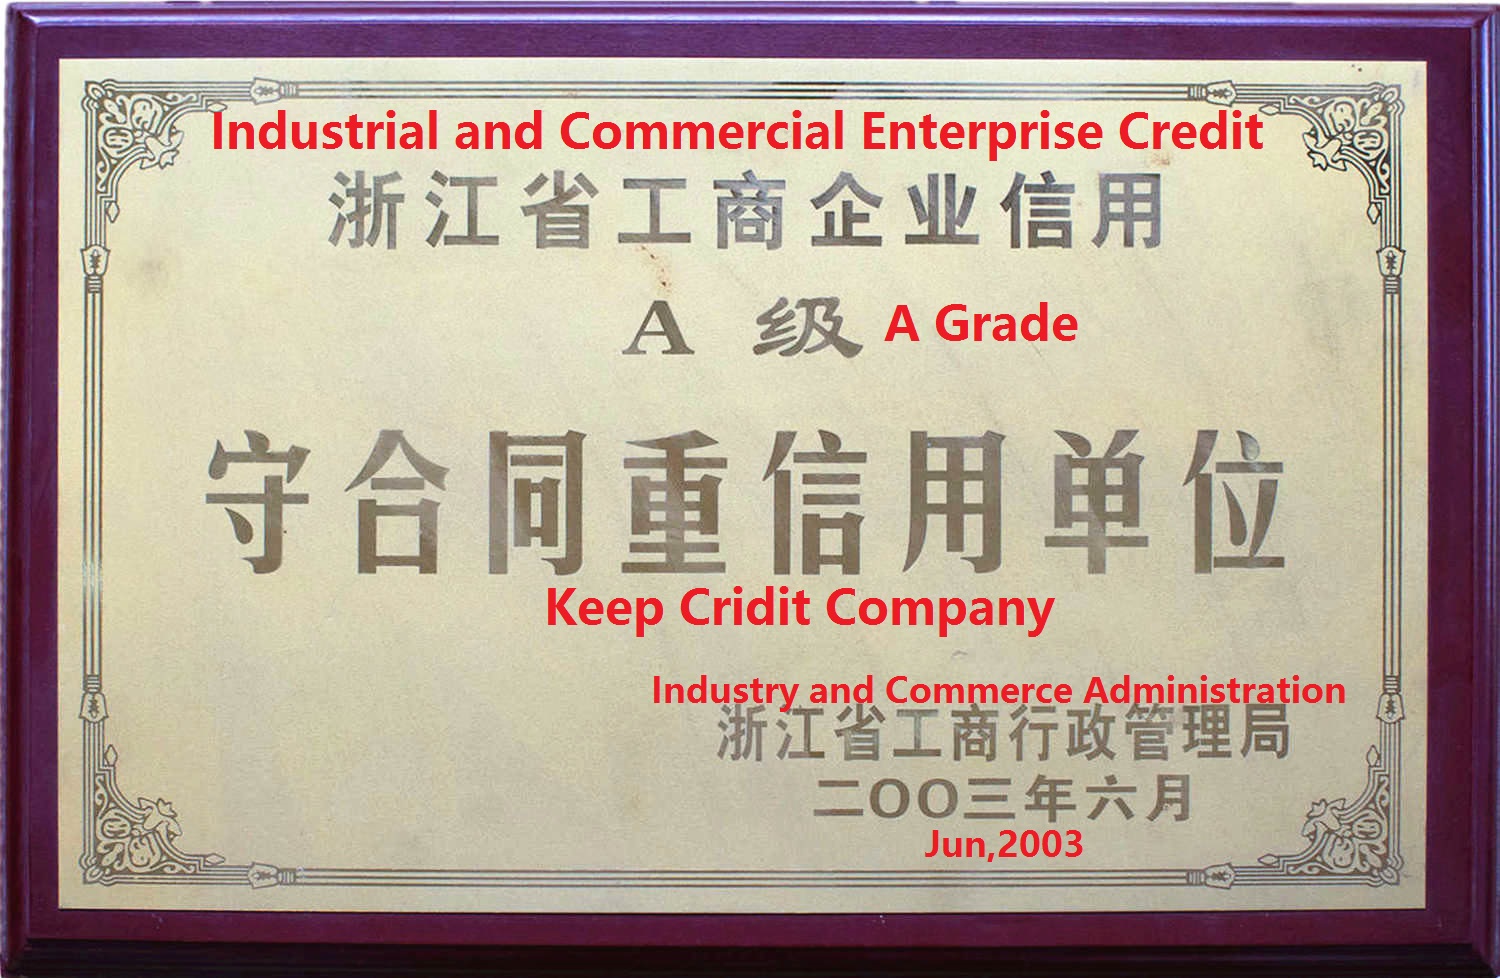 2003 A Grade certificate